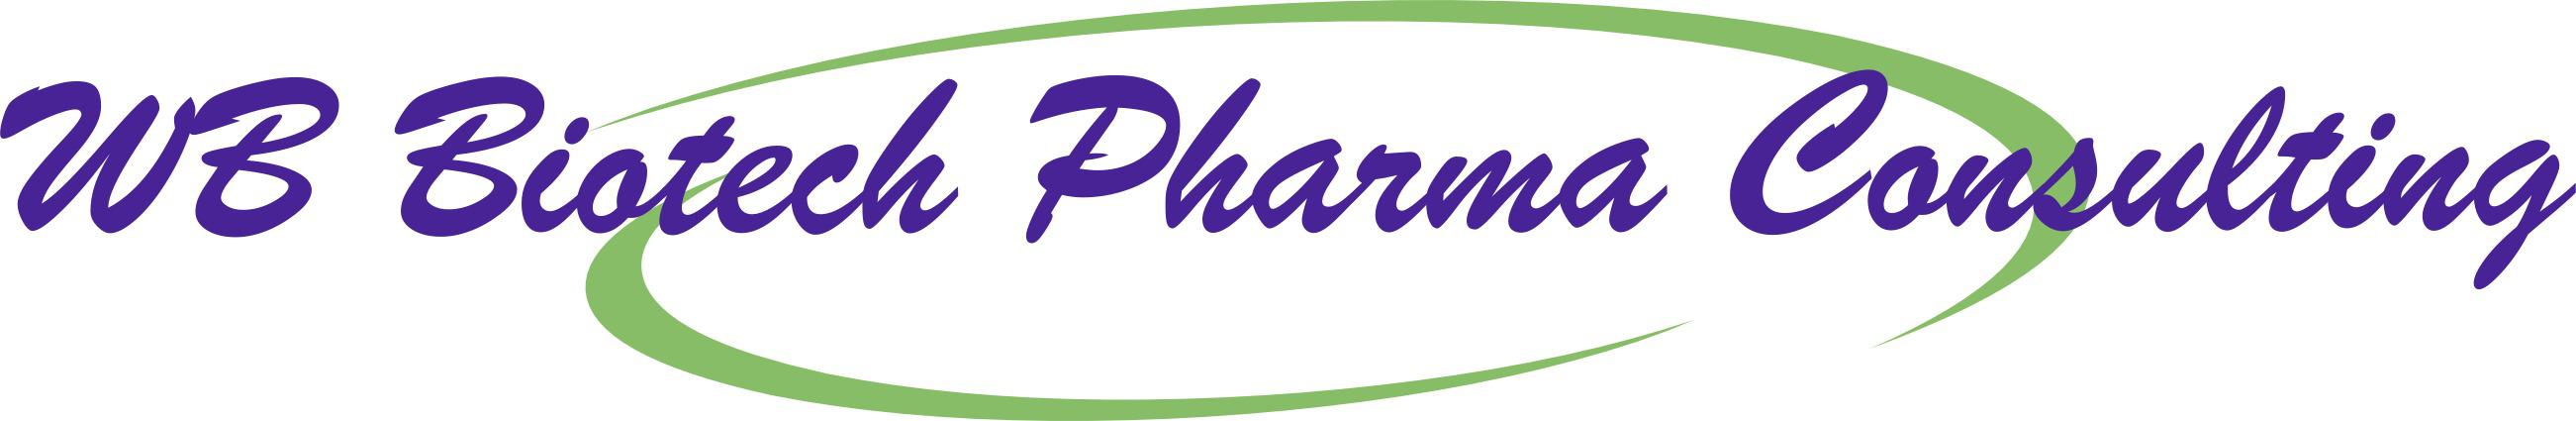 WB Biotech Pharma Consulting LLC Logo